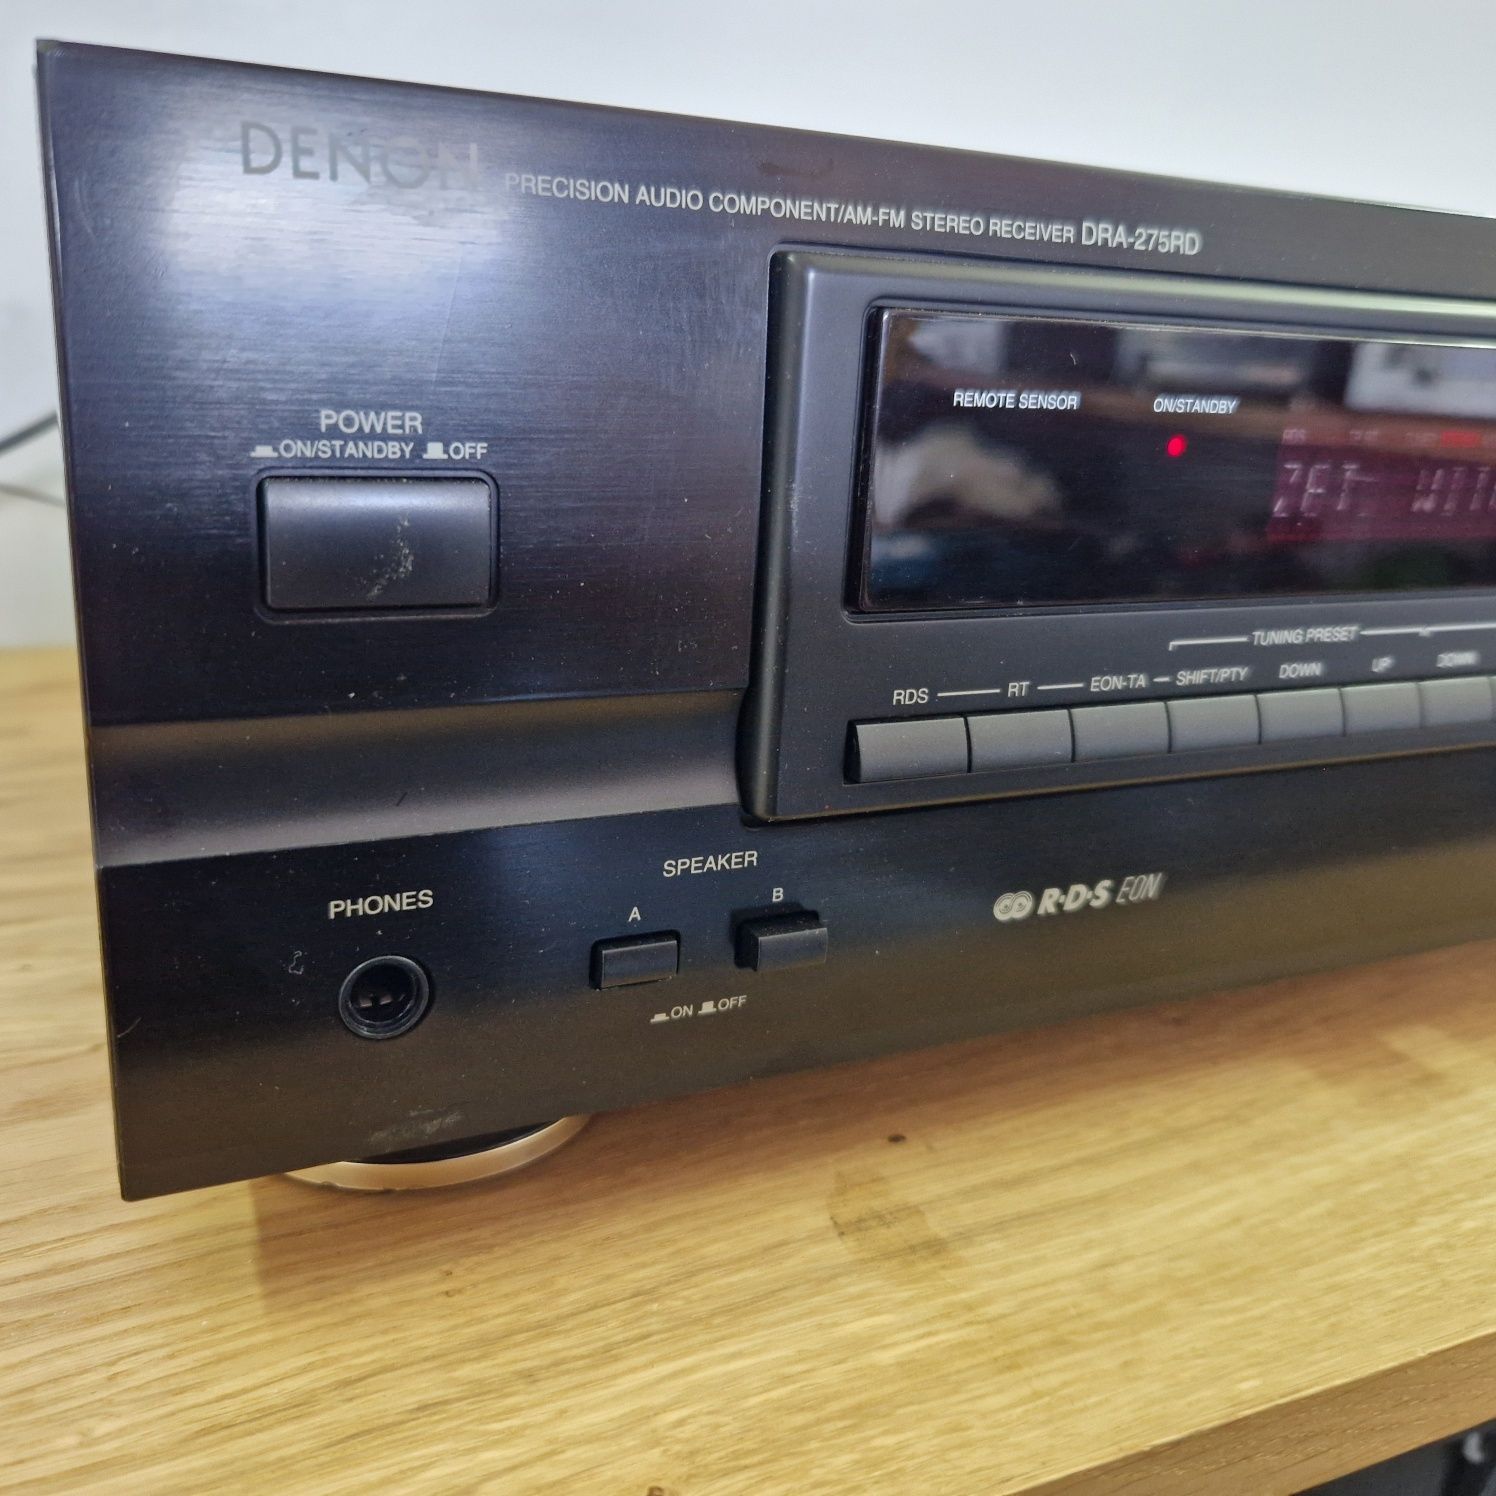 Amplituner stereo denon dra-275rd